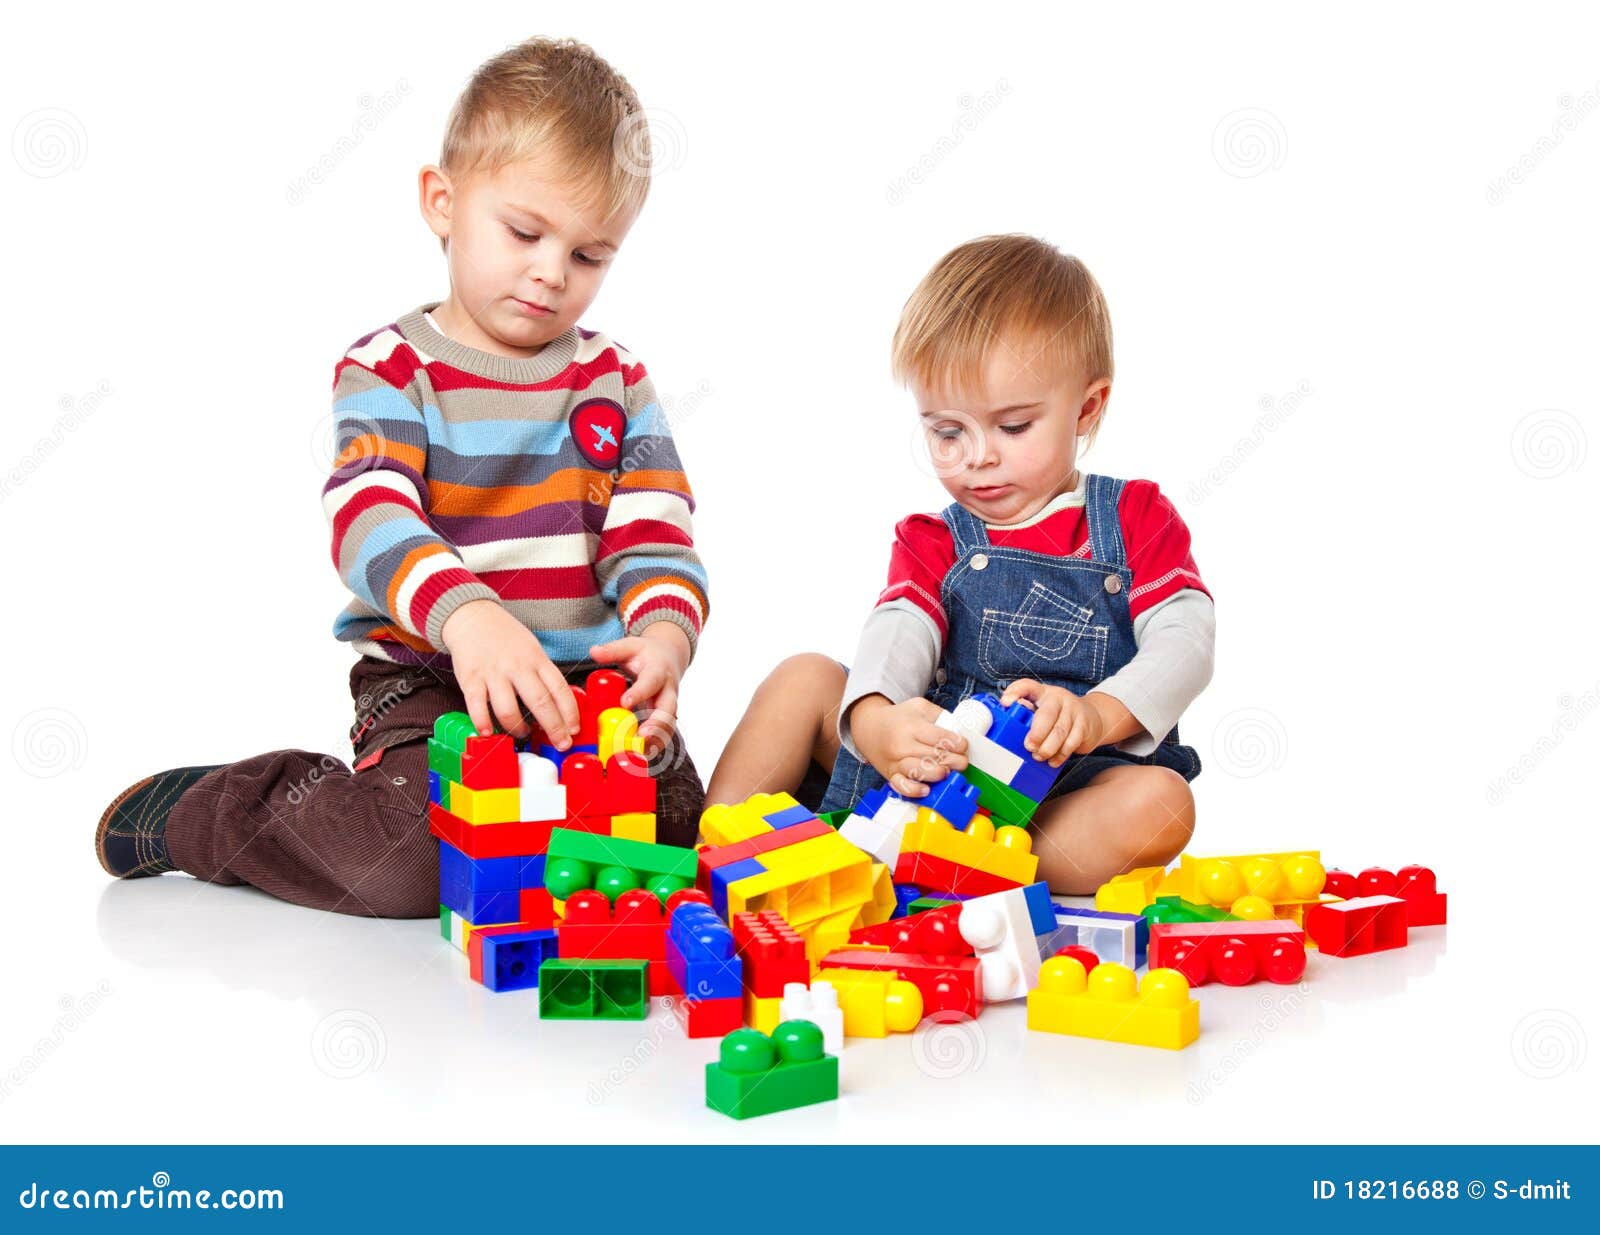 metaal Picasso Leegte De jongens spelen met lego stock foto. Image of maken - 18216688